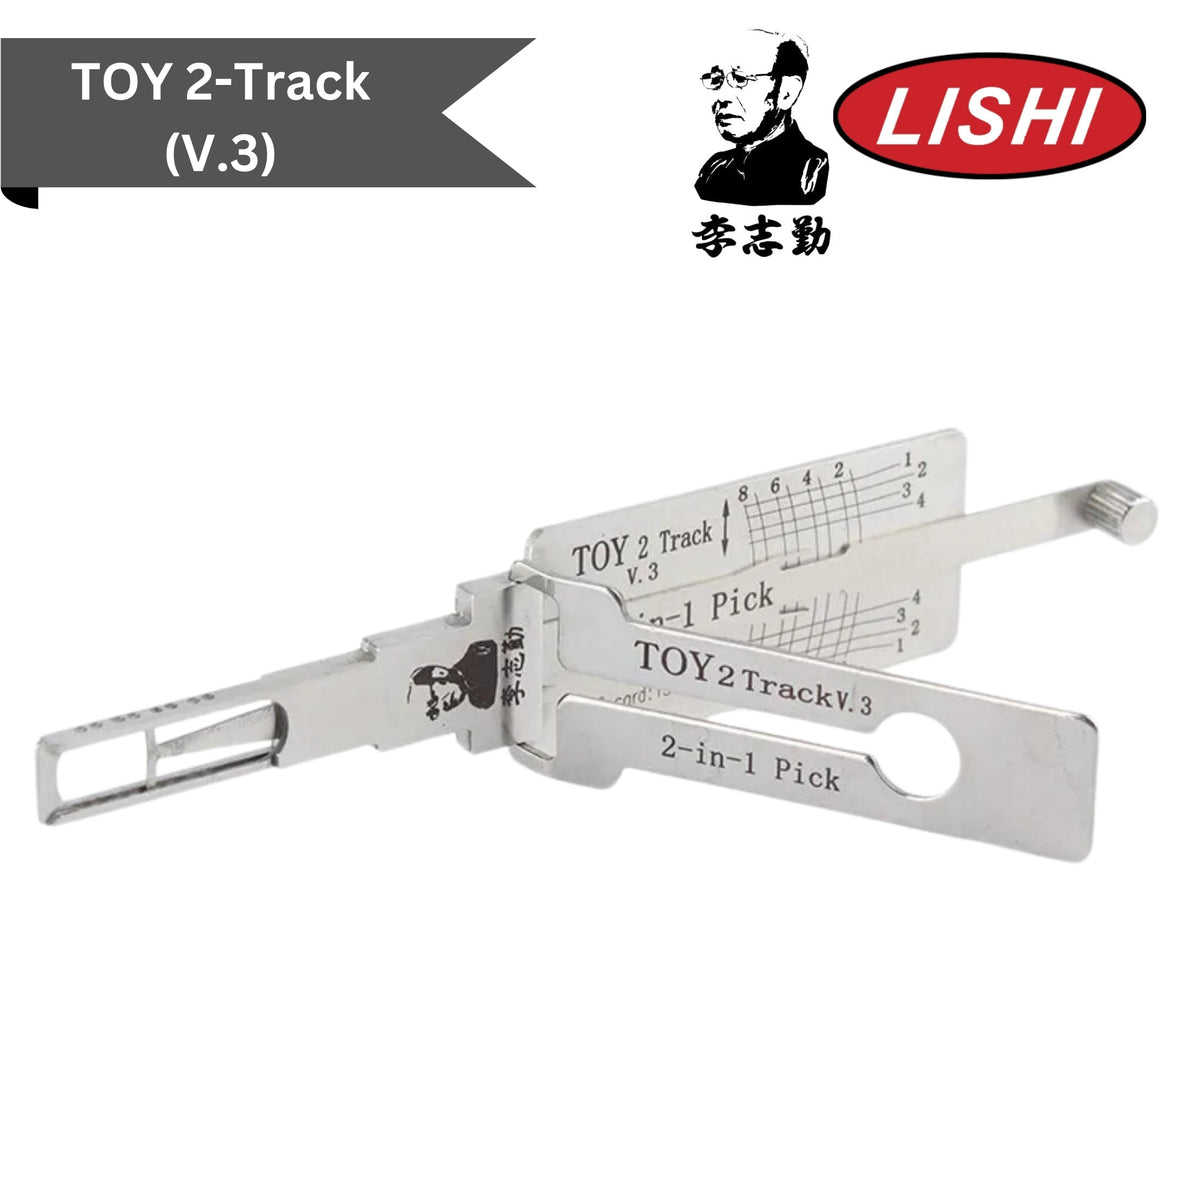 Original Lishi - Toyota TOY2T (V.3) - 2-in-1 Pick/Decoder - AG - Royal Key Supply